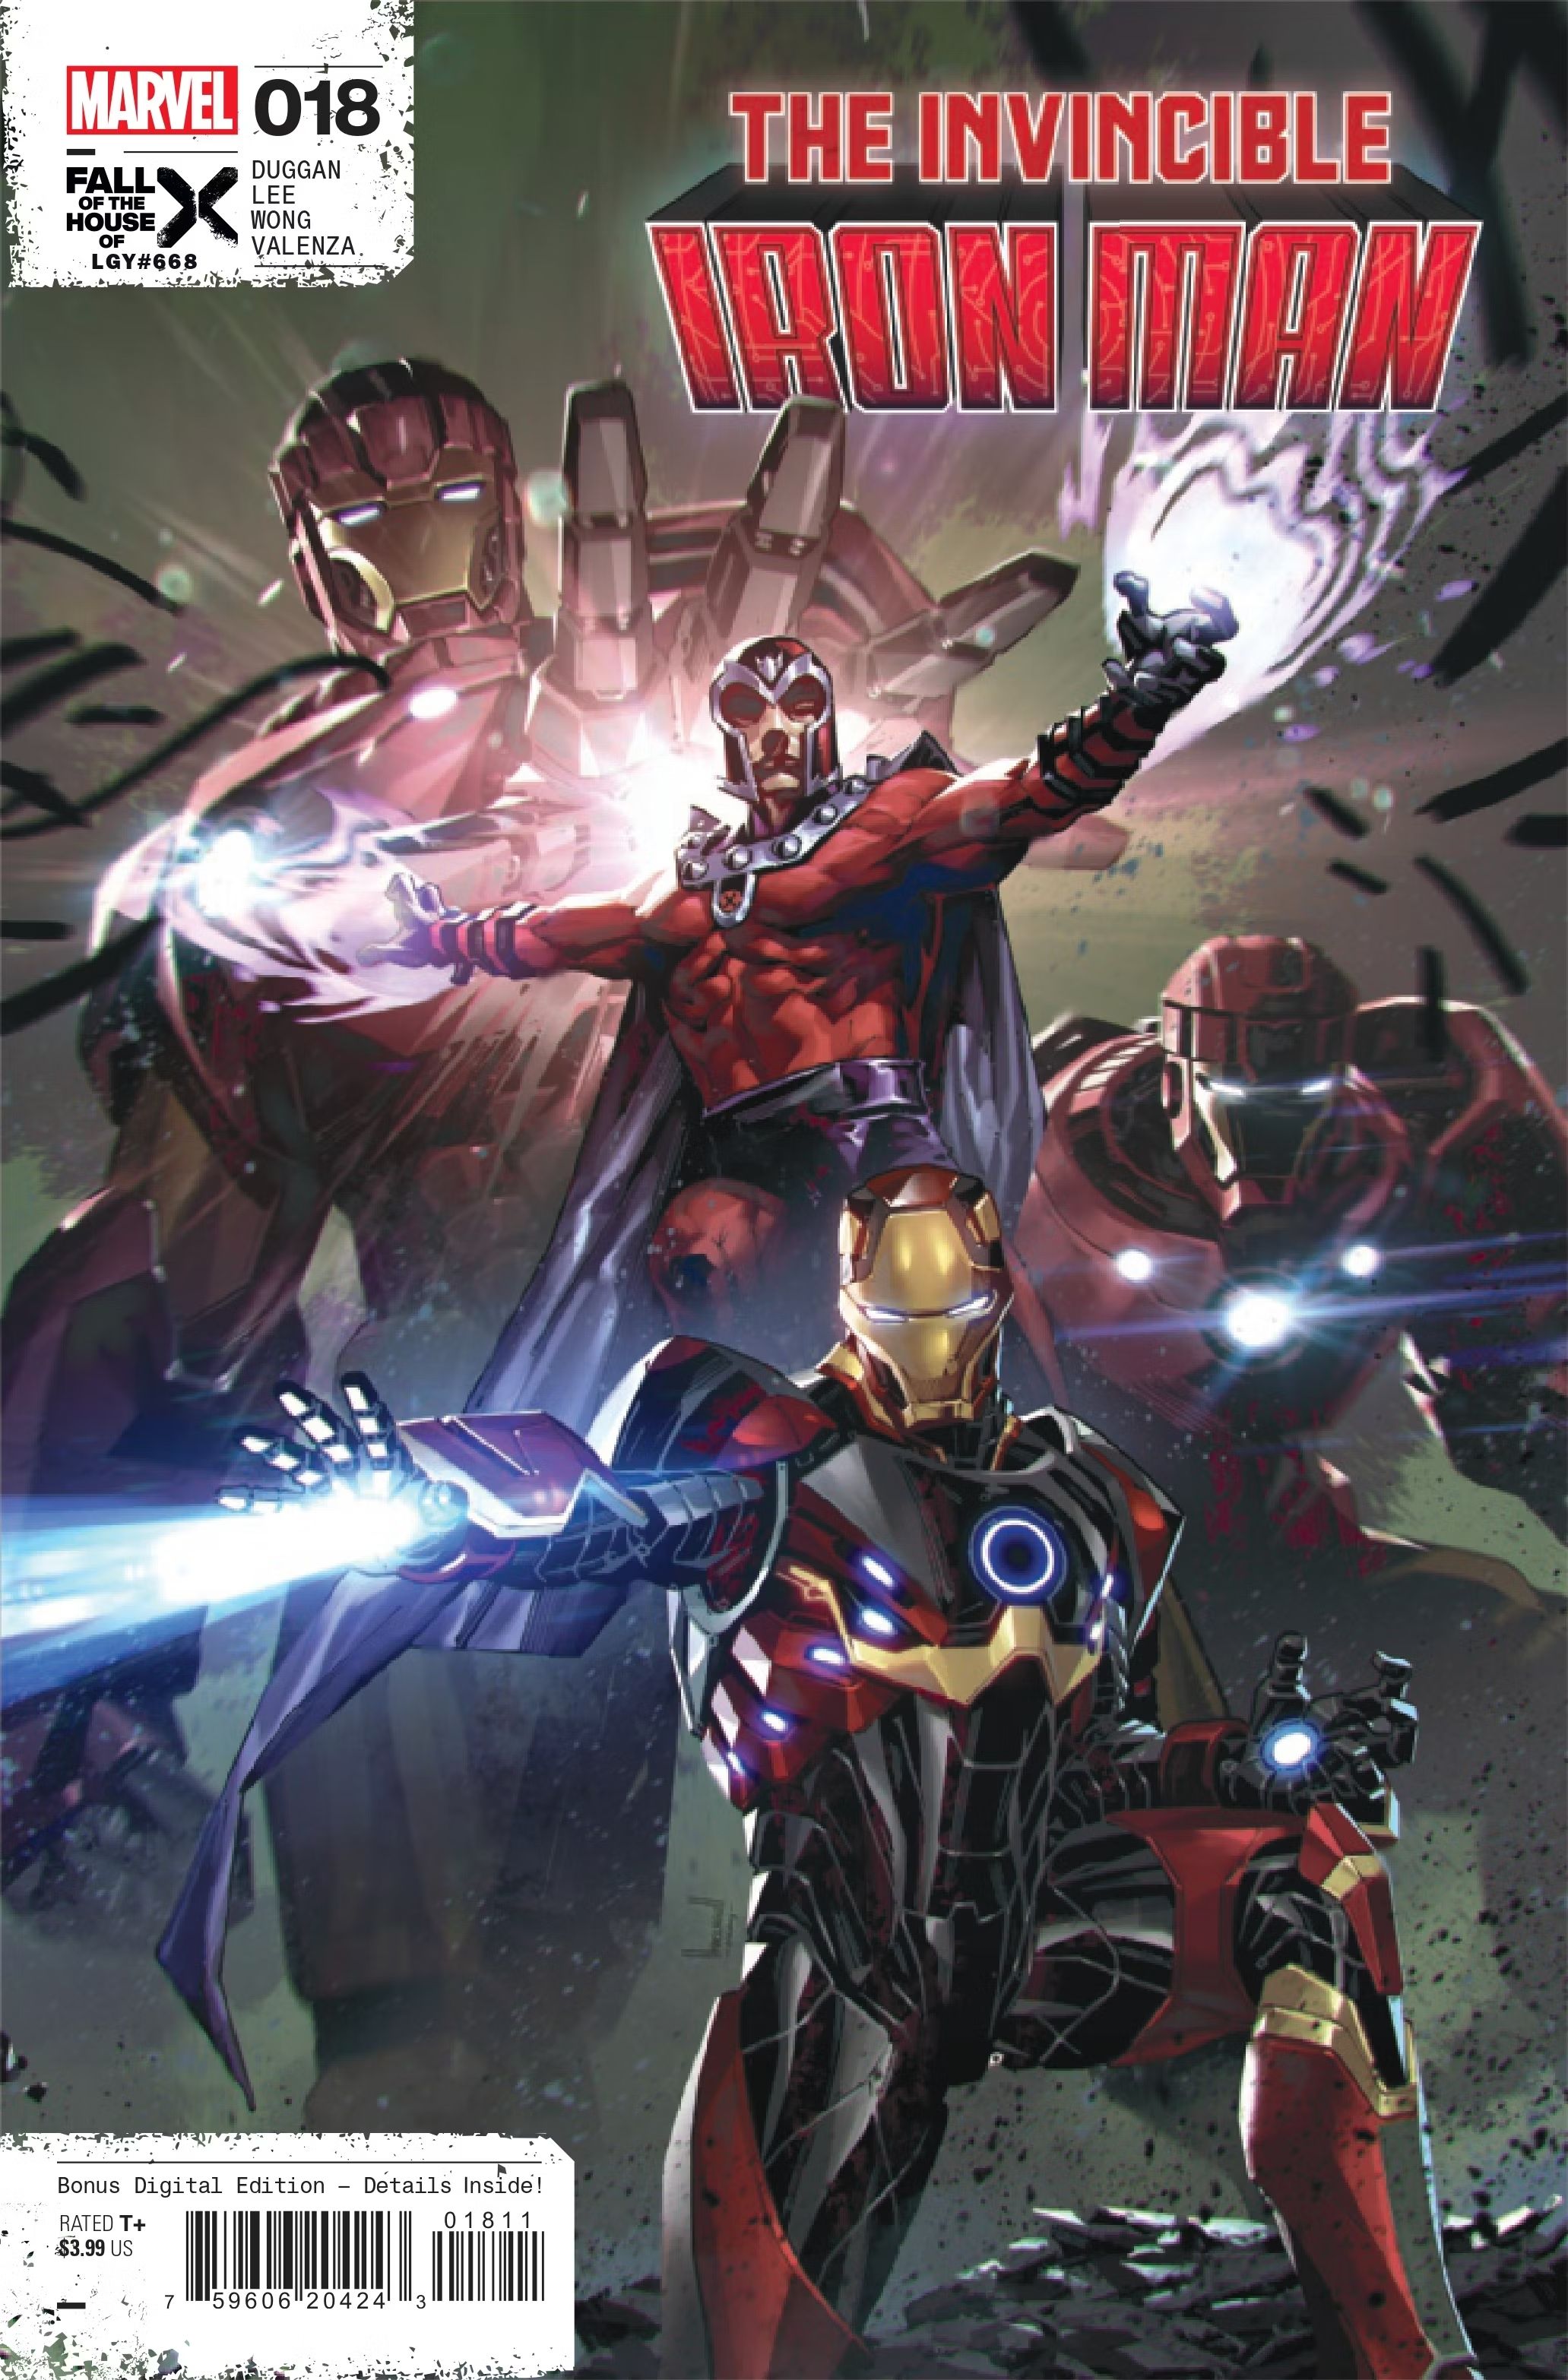 Os Sentinelas Stark aparecem atrás de Magneto e do Homem de Ferro enquanto eles liberam energia. 